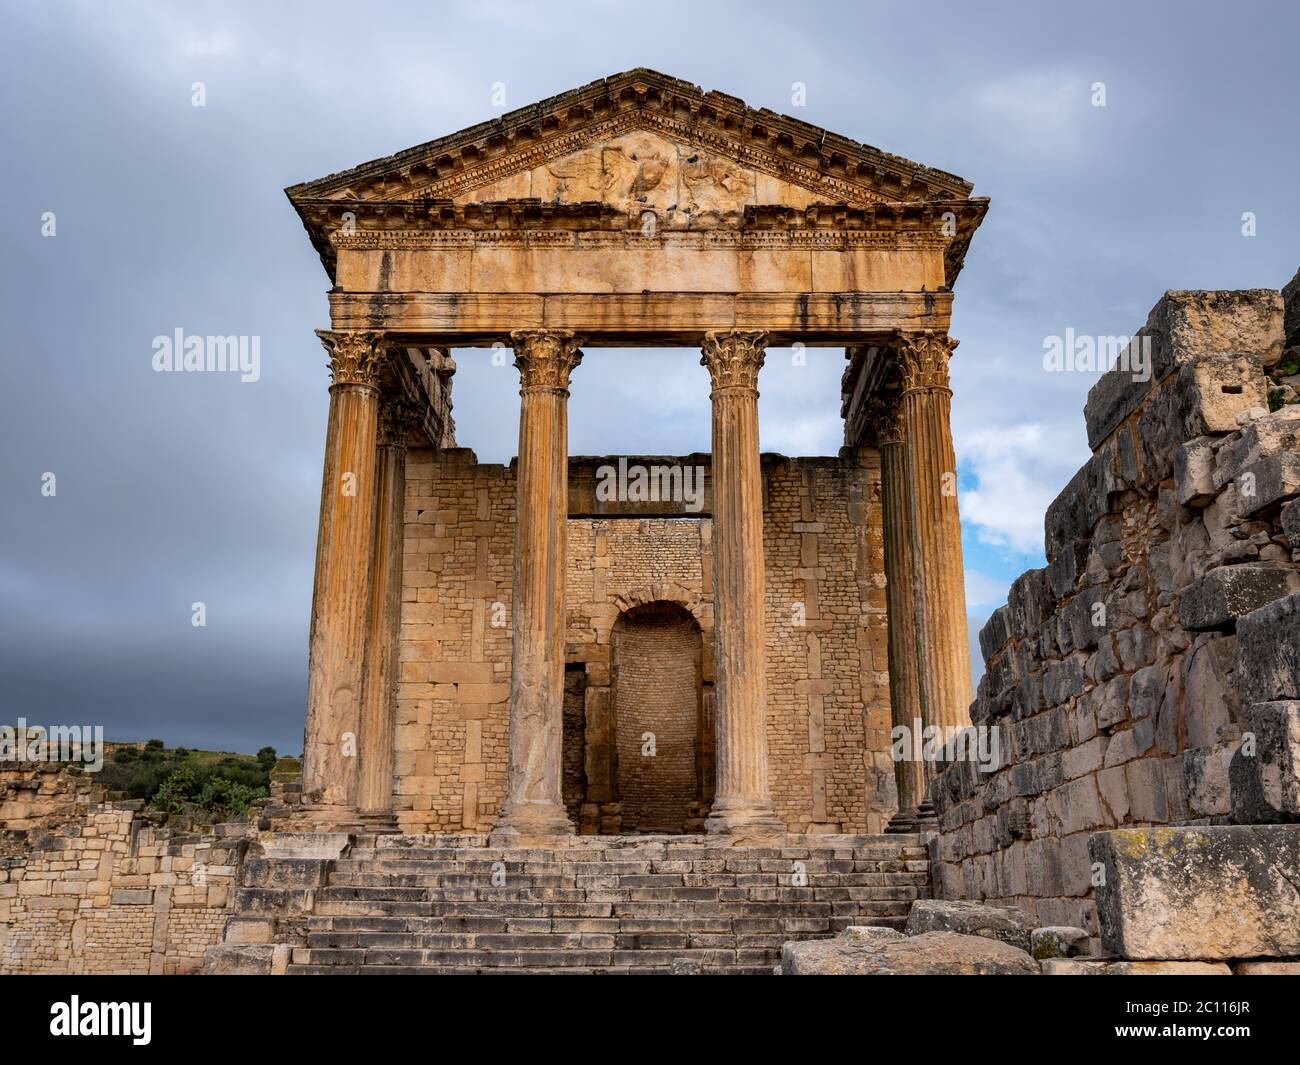 Der Tempel des Jupiter oder das Kapitol, das wichtigste stehende Gebäude der antiken römischen archäologischen Stätte von Dougga (Thugga), Tunesien Stockfoto